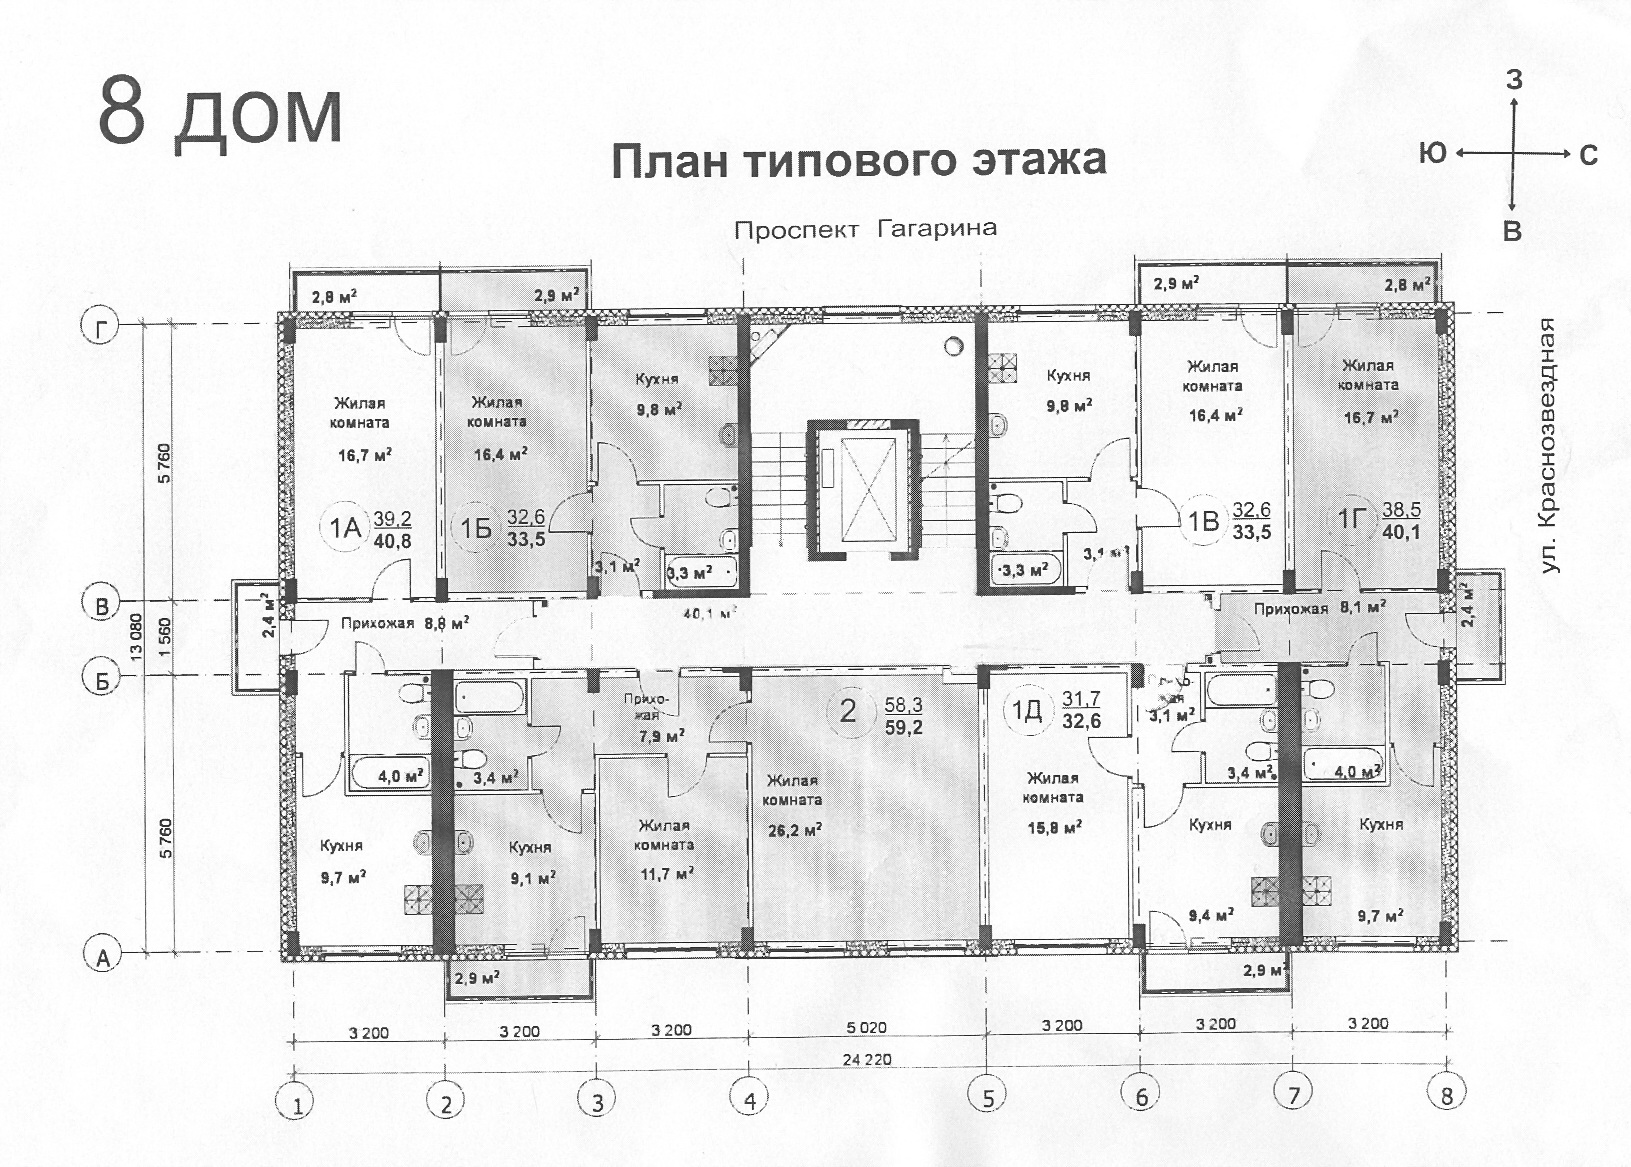 Типовой этаж дома. План этажа. Планы типовых этажей жилых домов. План типового этажа. Планировка типовых 5 этажных домов.